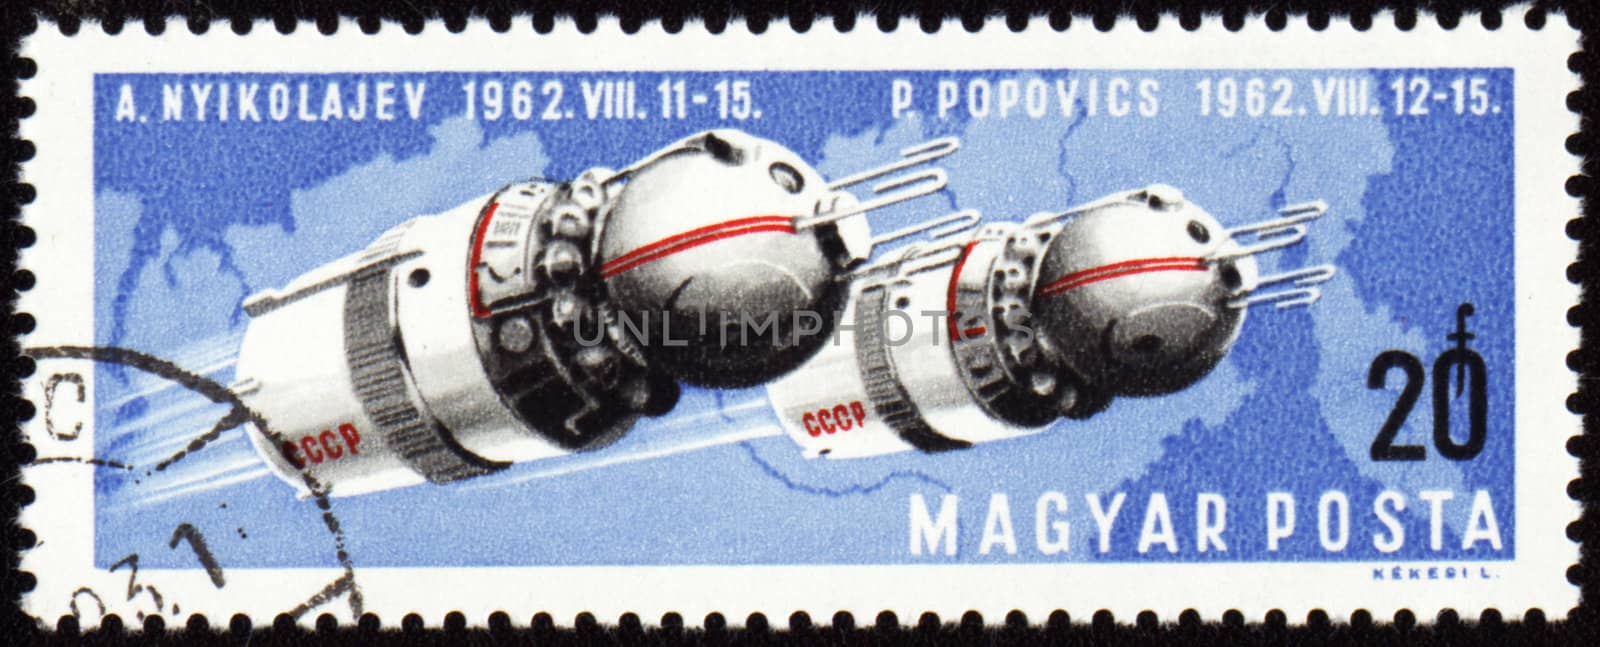 Soviet spaceships Vostok-3 and Vostok-4 on post stamp by wander